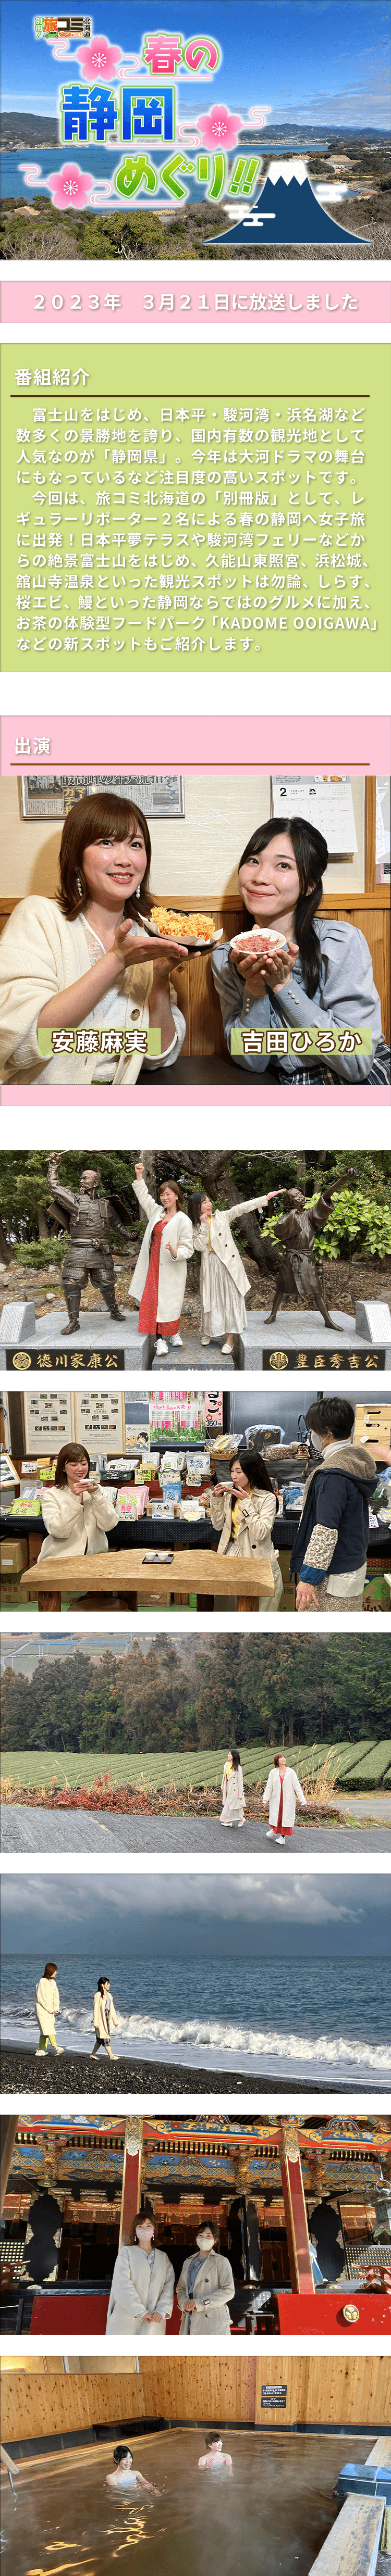 別冊！旅コミ北海道　春の静岡めぐり！！富士山をはじめ、日本平・駿河湾・浜名湖など数多くの景勝地を誇り、国内有数の観光地として人気なのが「静岡県」。今年は大河ドラマの舞台にもなっているなど注目度の高いスポットです。今回は、旅コミ北海道の「別冊版」として、レギュラーリポーター２名による春の静岡へ女子旅に出発！日本平夢テラスや駿河湾フェリーなどからの絶景富士山をはじめ、久能山東照宮、浜松城、舘山寺温泉といった観光スポットは勿論、しらす、桜エビ、鰻といった静岡ならではのグルメに加え、お茶の体験型フードパーク「KADOME OOIGAWA」などの新スポットもご紹介します。